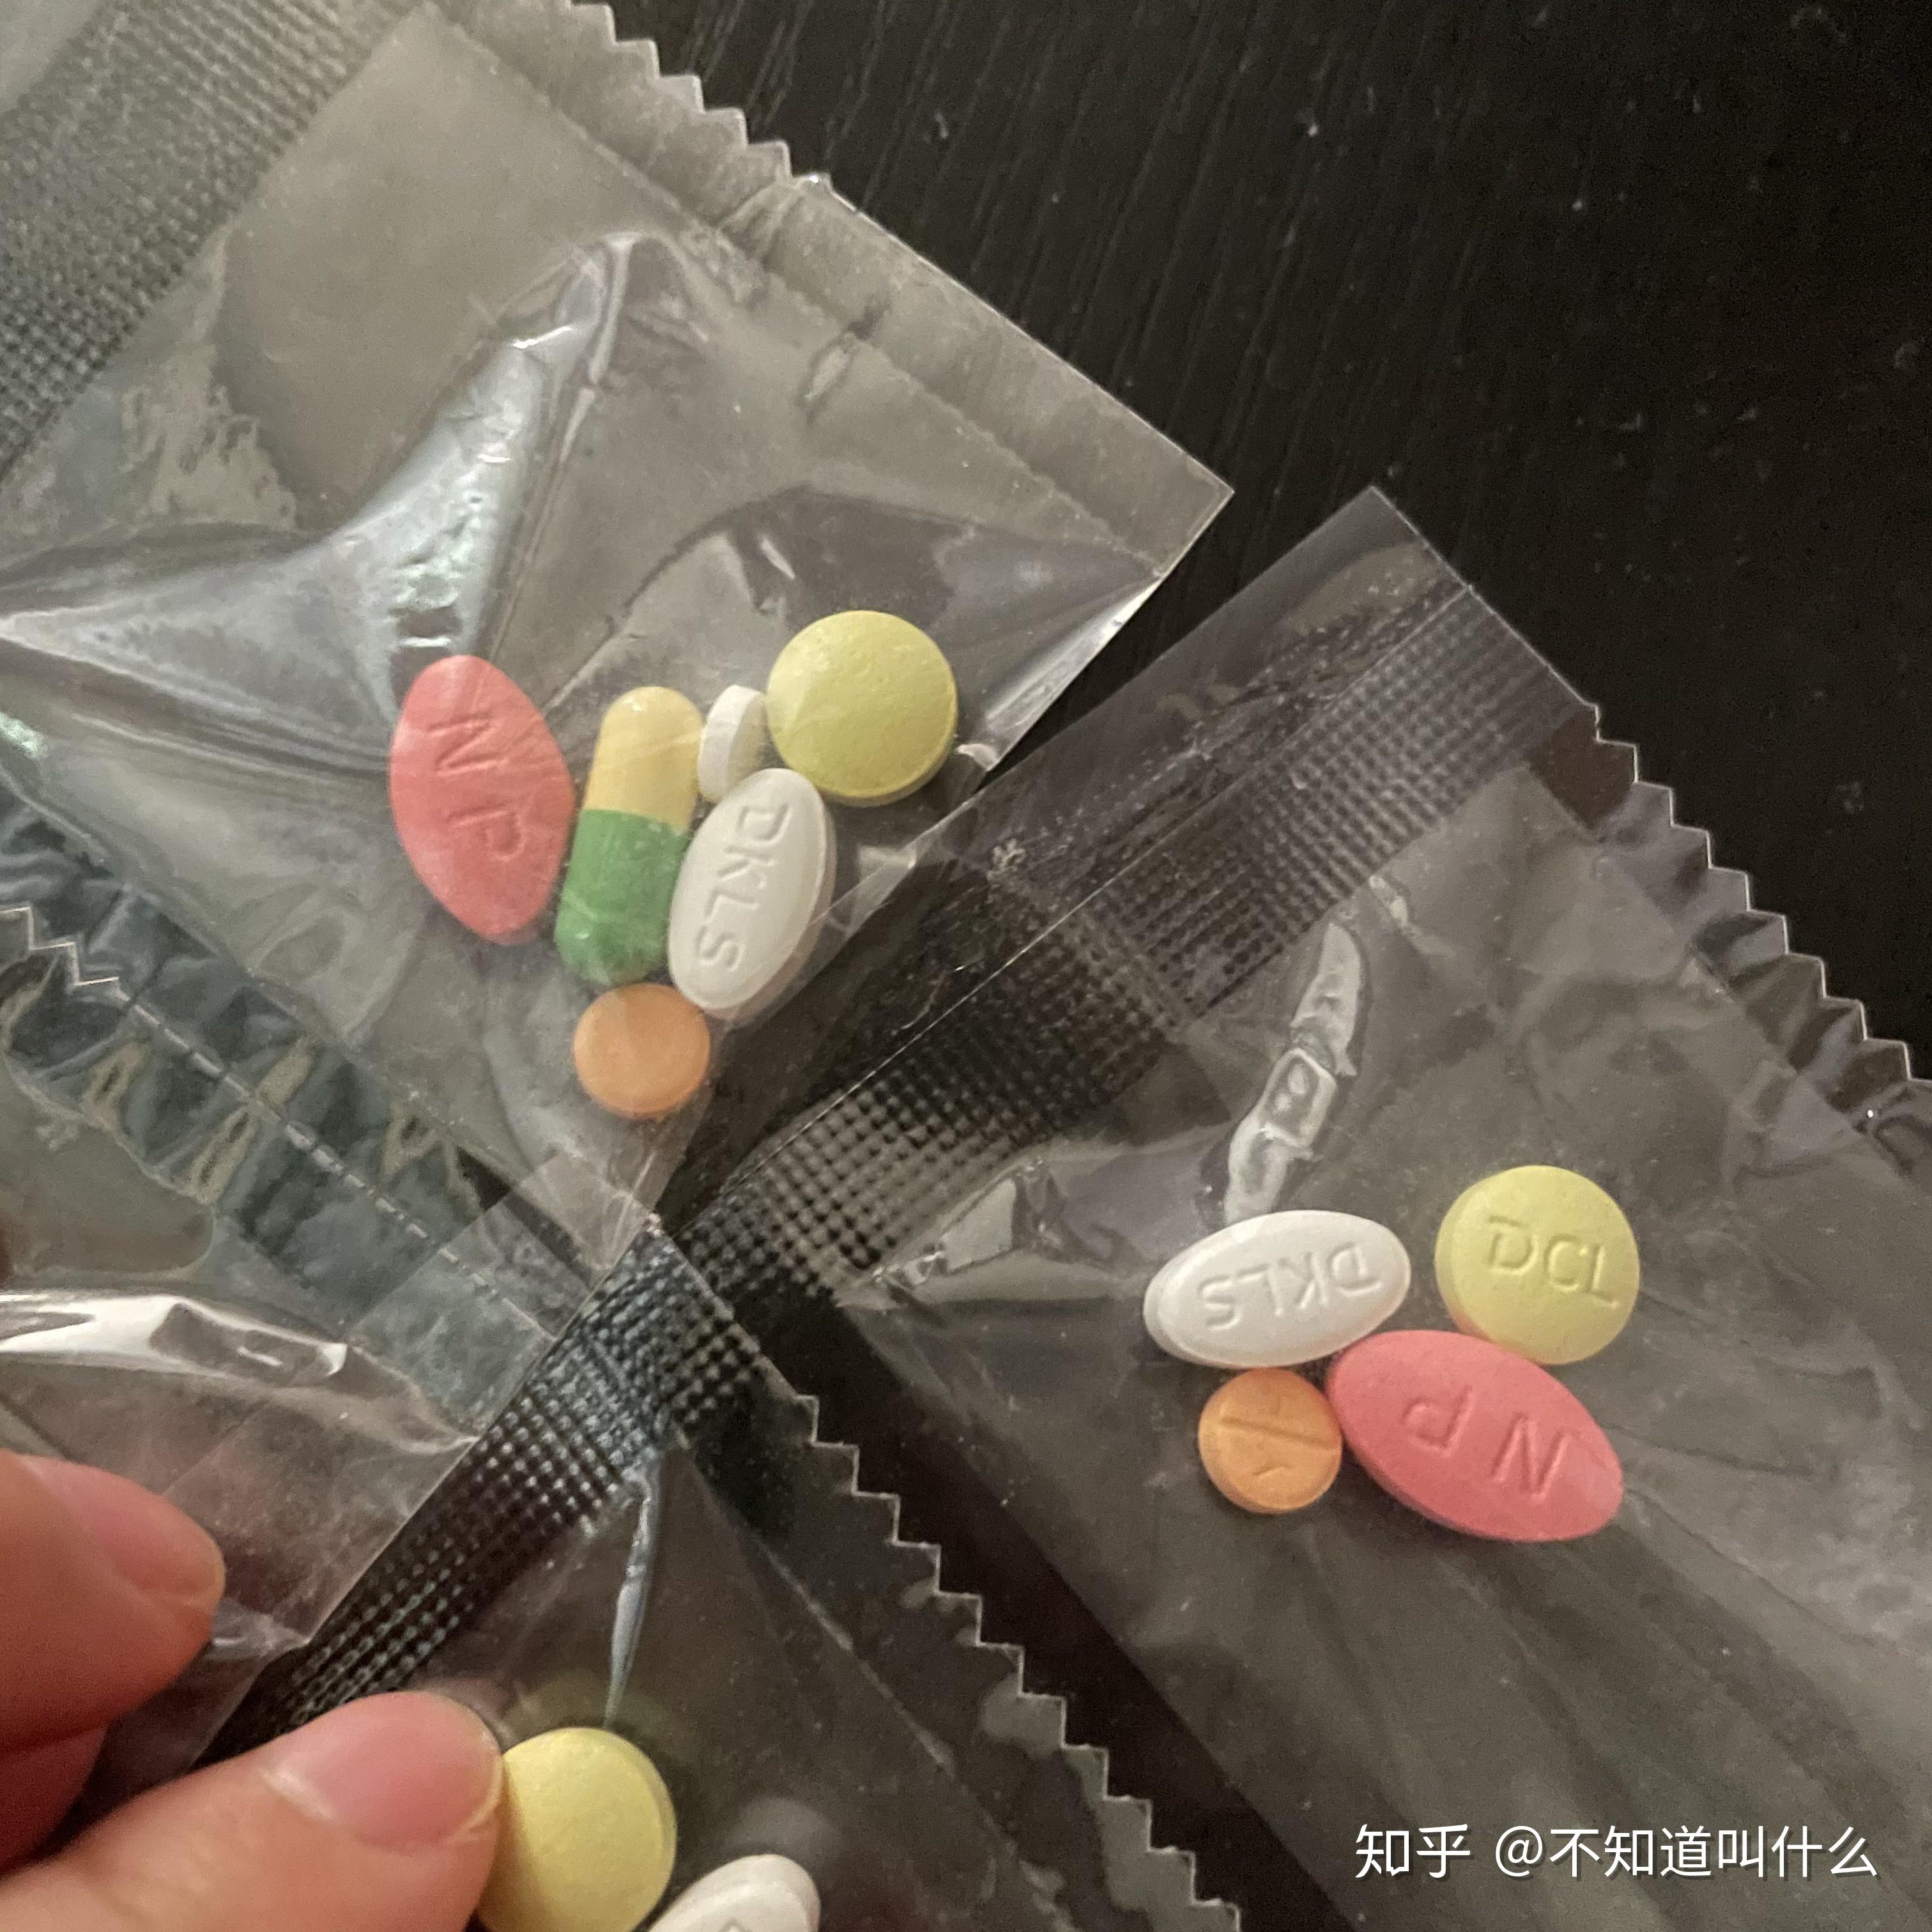 韩国处方药图片